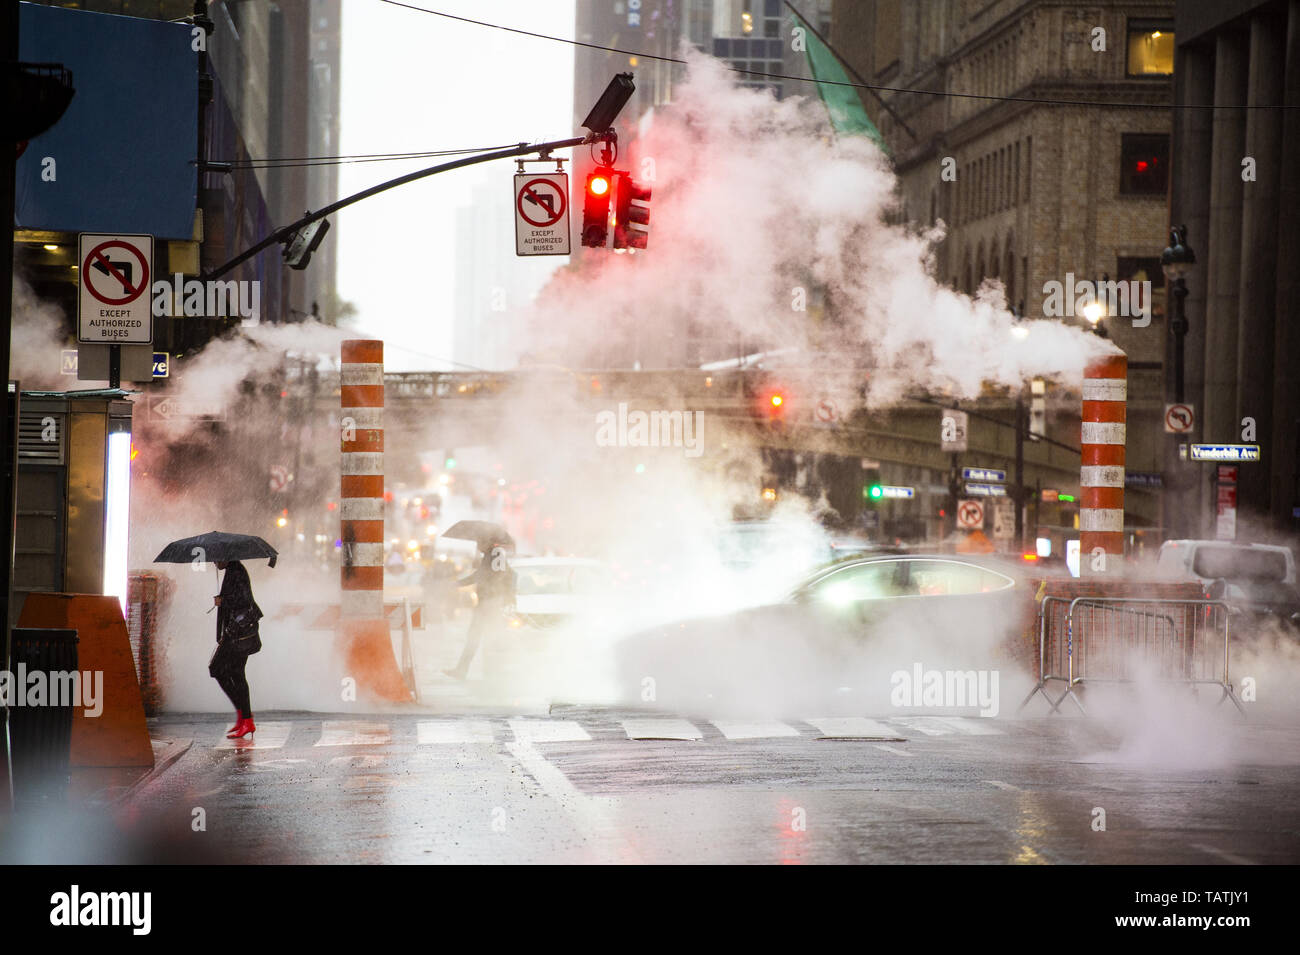 Une femme avec un parapluie et red High heels shoes est traversée de la 42e rue à Manhattan. Voitures et de vapeur sortant de l'égout. Banque D'Images